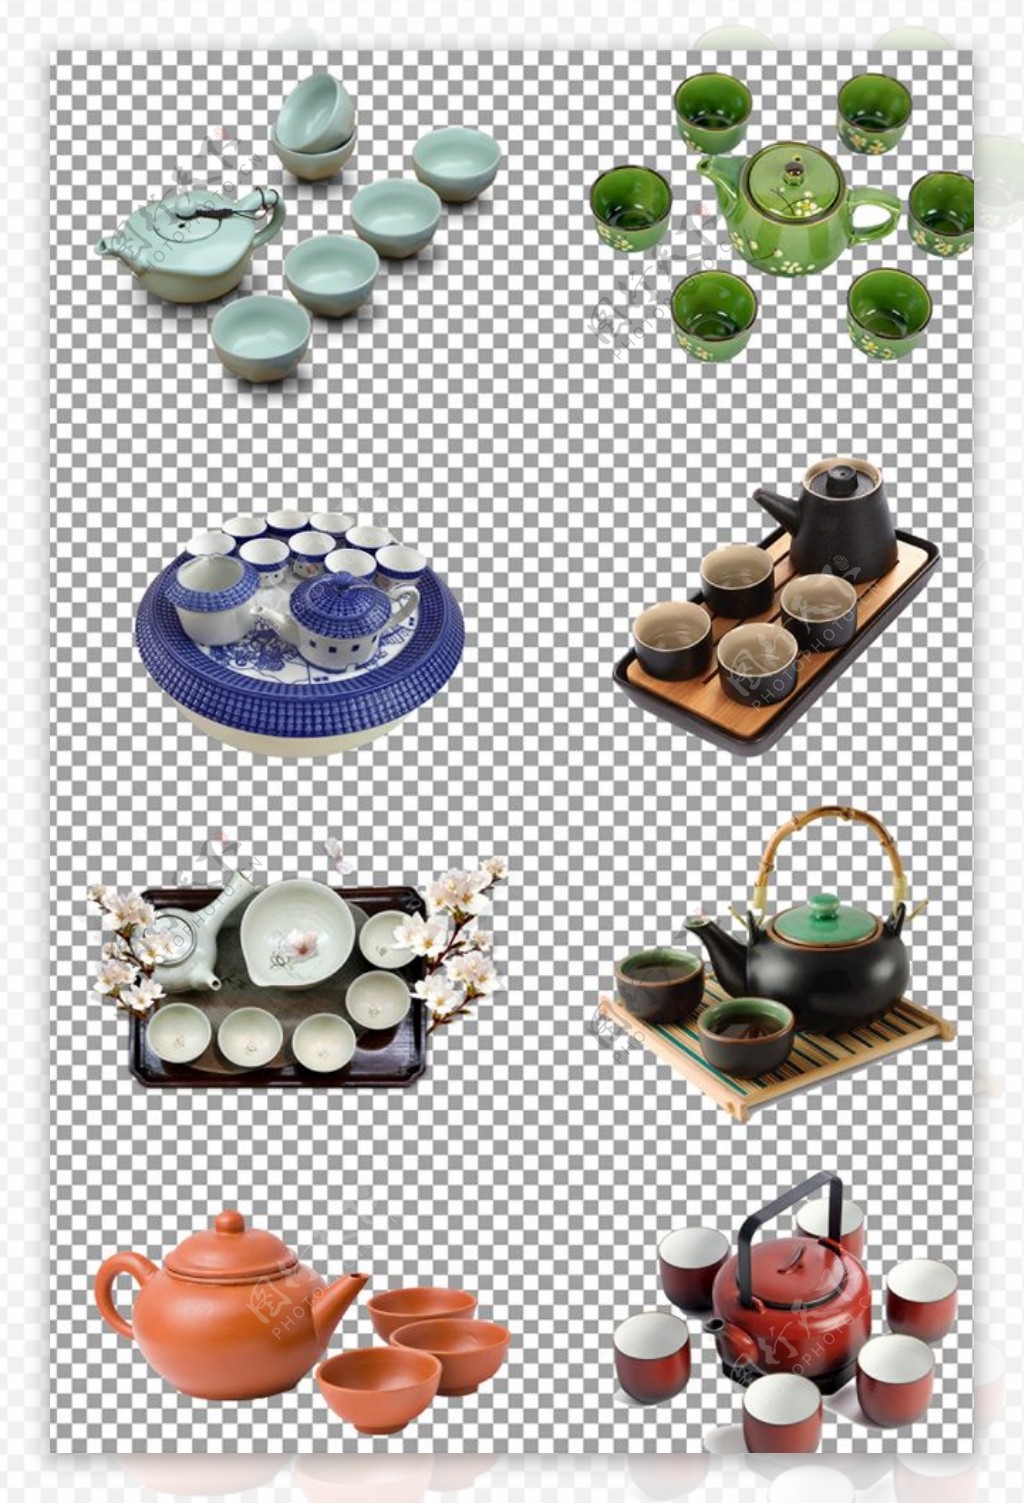 陶瓷花纹茶具图片